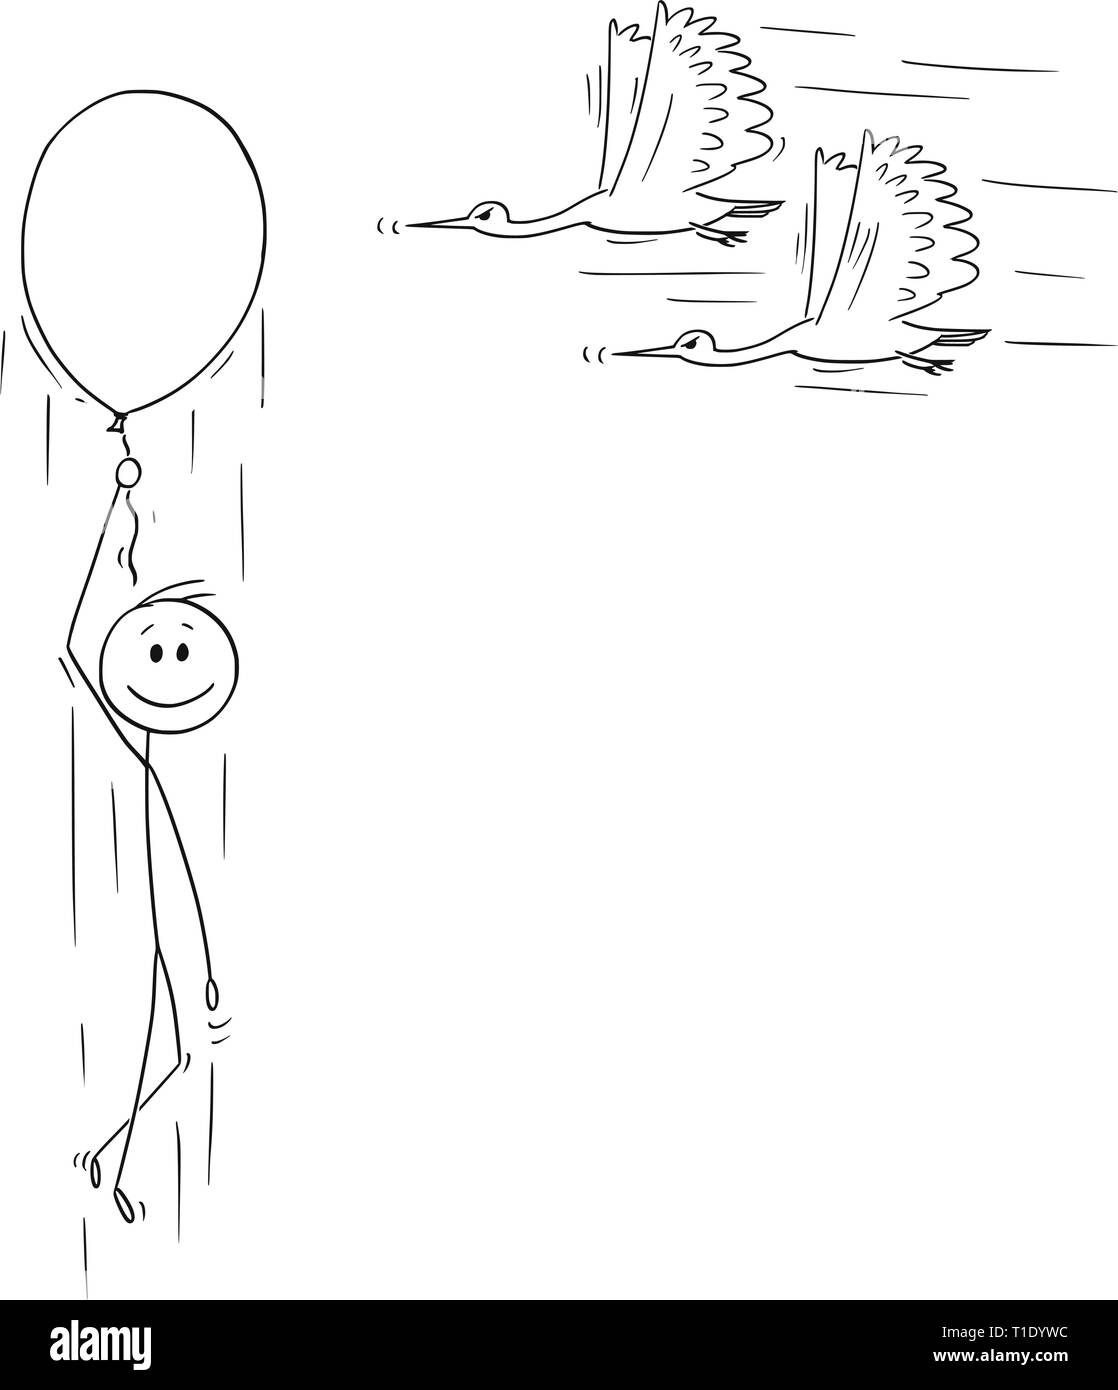 Cartoon Strichmännchen Zeichnen konzeptionelle Darstellung der glückliche Mann oder Geschäftsmann fliegen bis auf aufblasbaren Luftballon während zwei Vögel mit spitzen Schnabel fliegen um den Ballon. Konzept der Gefahr und Risiko. Stock Vektor